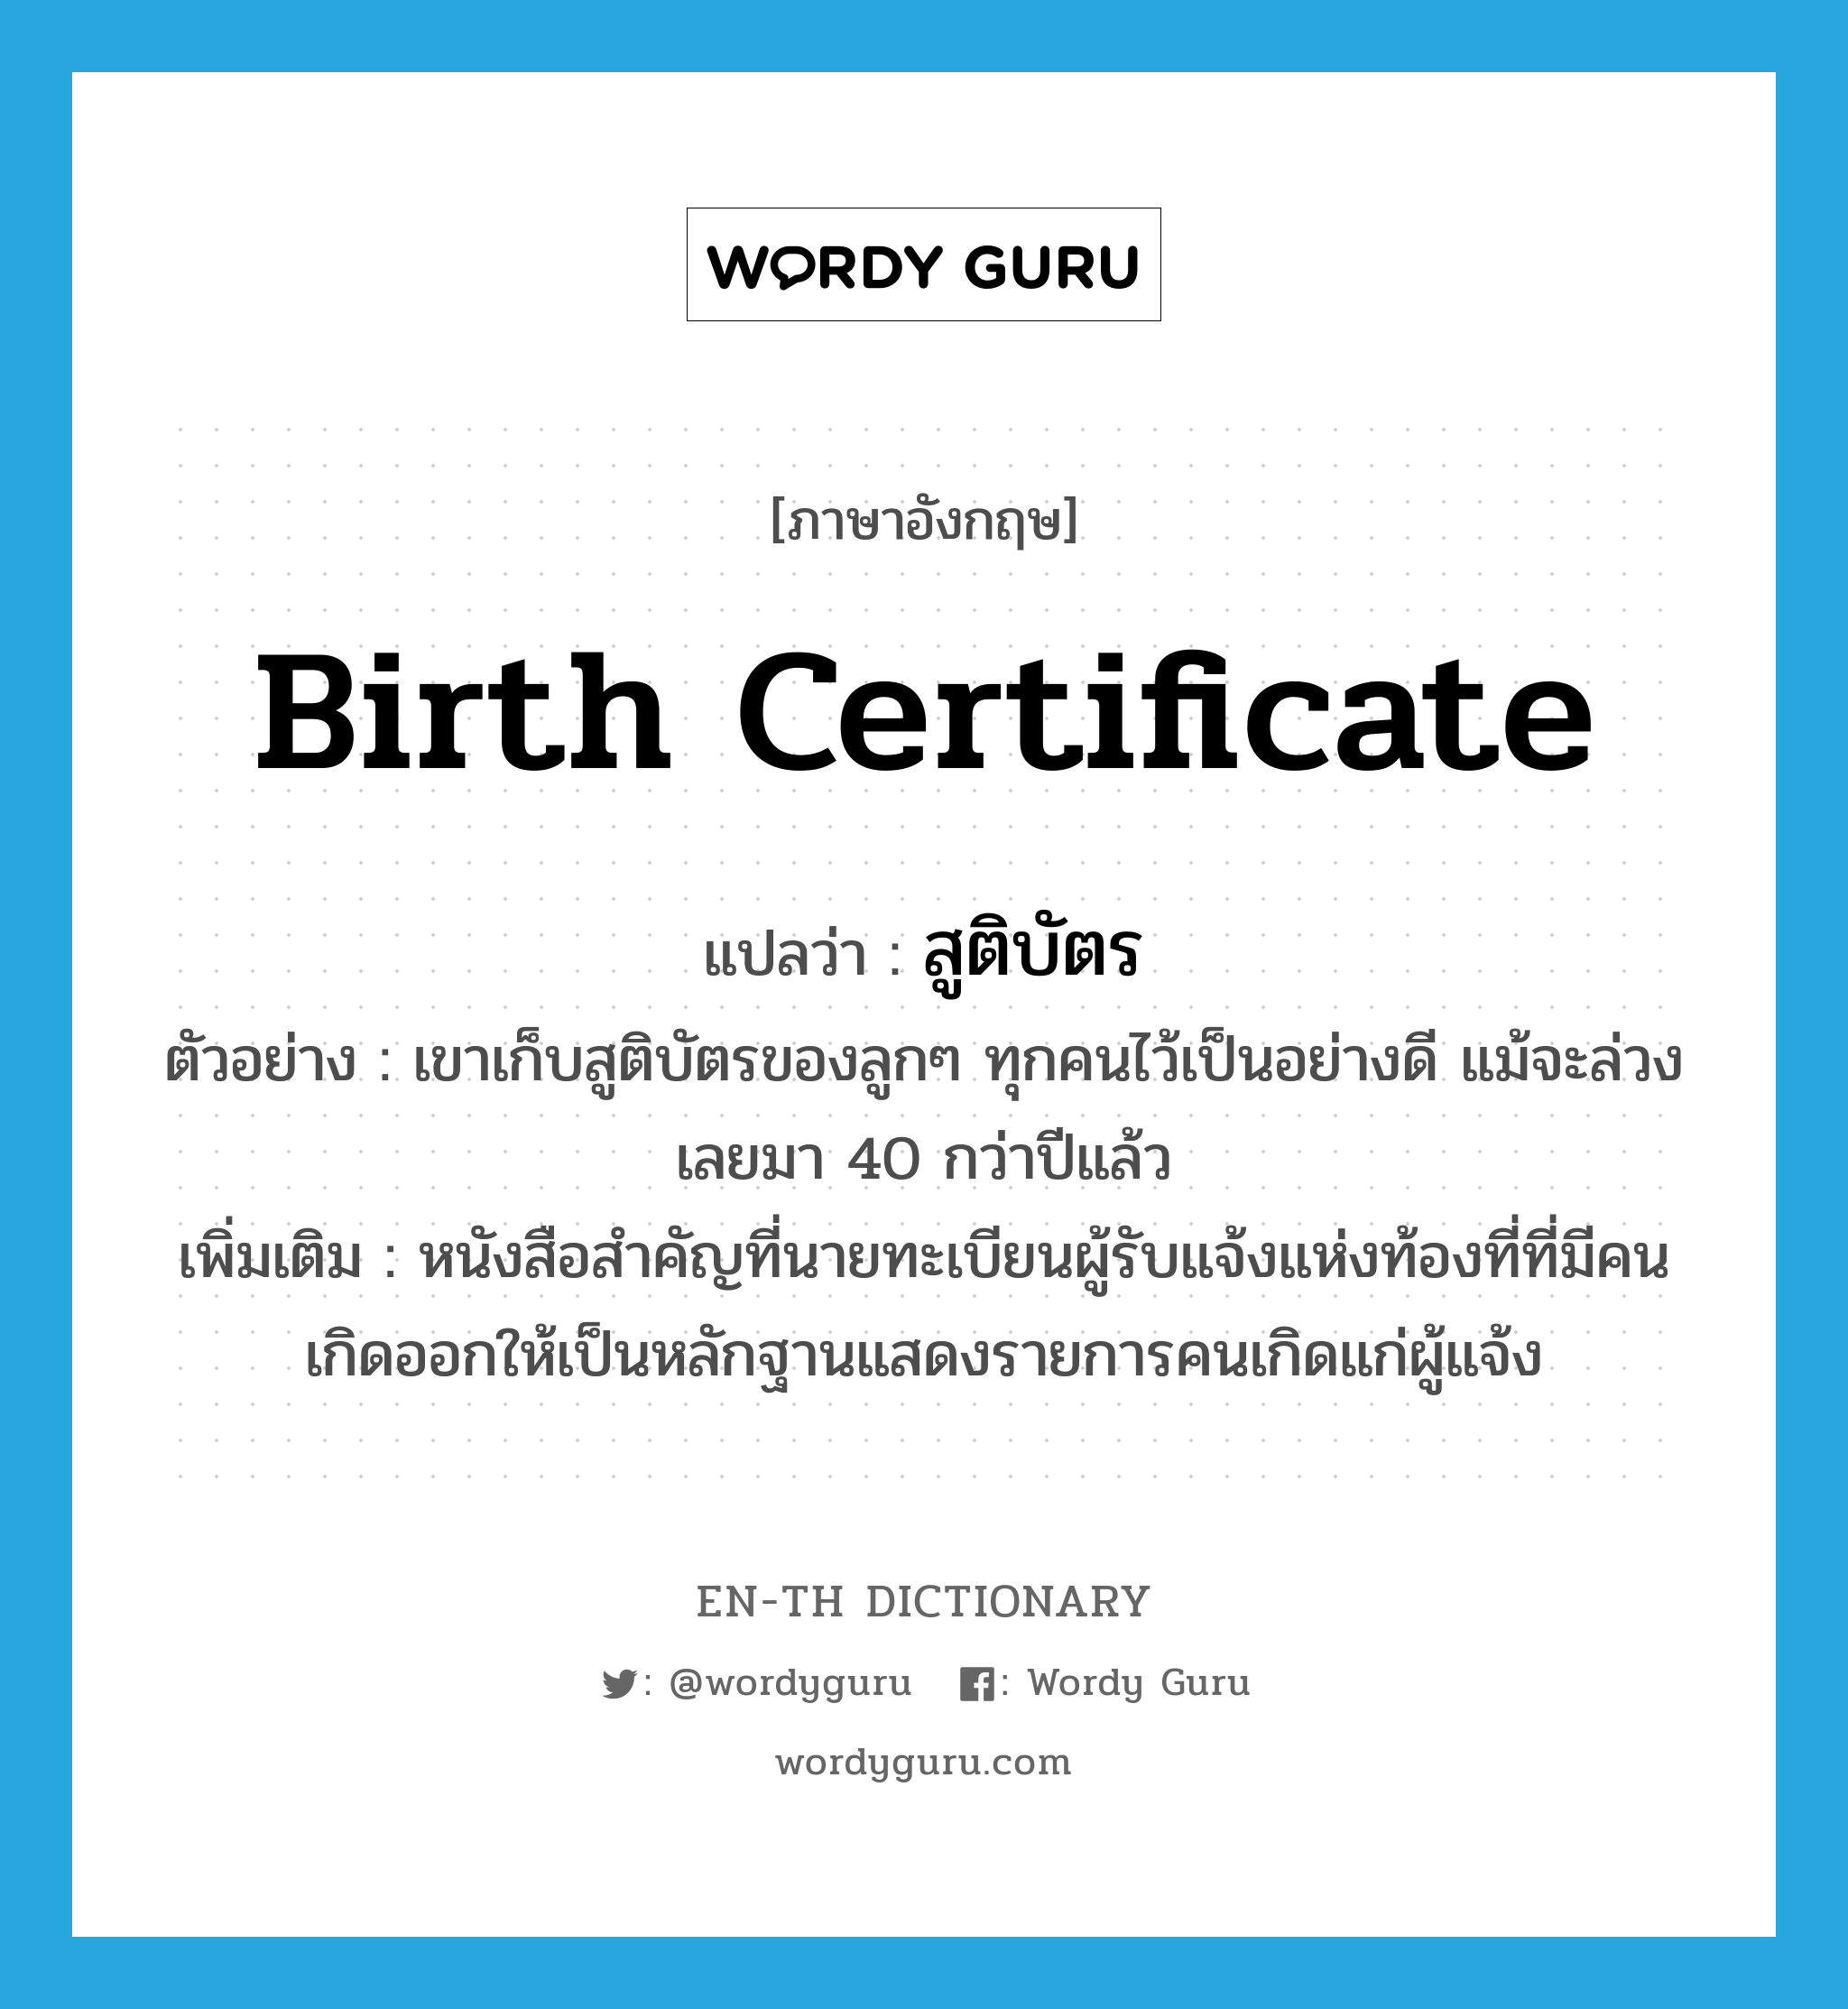 birth certificate แปลว่า?, คำศัพท์ภาษาอังกฤษ birth certificate แปลว่า สูติบัตร ประเภท N ตัวอย่าง เขาเก็บสูติบัตรของลูกๆ ทุกคนไว้เป็นอย่างดี แม้จะล่วงเลยมา 40 กว่าปีแล้ว เพิ่มเติม หนังสือสำคัญที่นายทะเบียนผู้รับแจ้งแห่งท้องที่ที่มีคนเกิดออกให้เป็นหลักฐานแสดงรายการคนเกิดแก่ผู้แจ้ง หมวด N